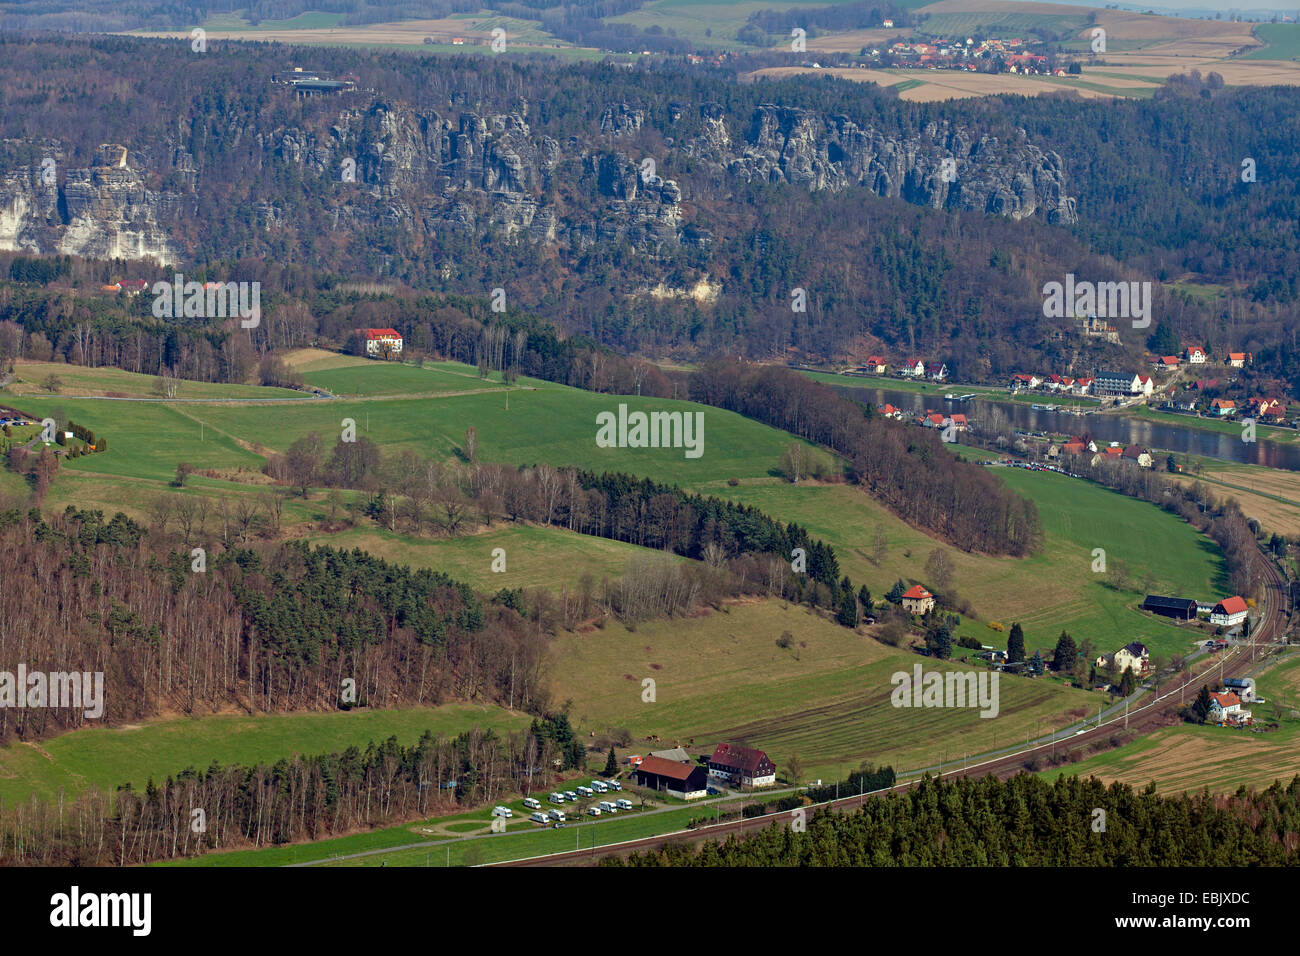 view from Lilienstein to Bastei area, Germany, Saxony, Elbsandsteingebirge, Saechsiche Schweiz Stock Photo